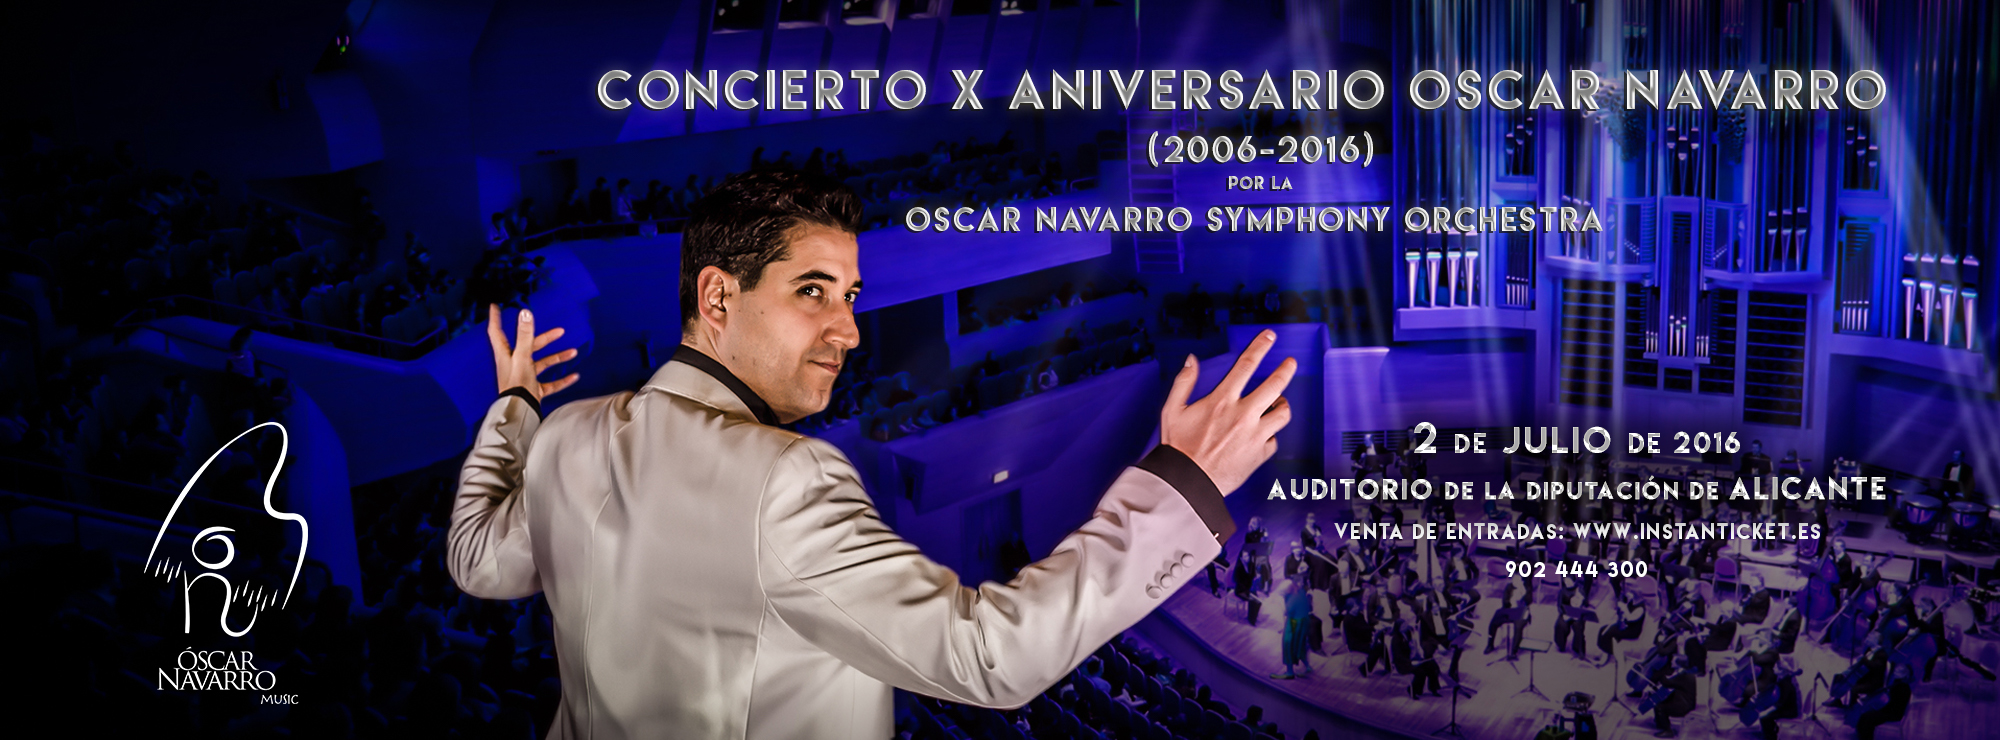 Cartel del concierto por el décimo aniversario de Óscar Navarro.